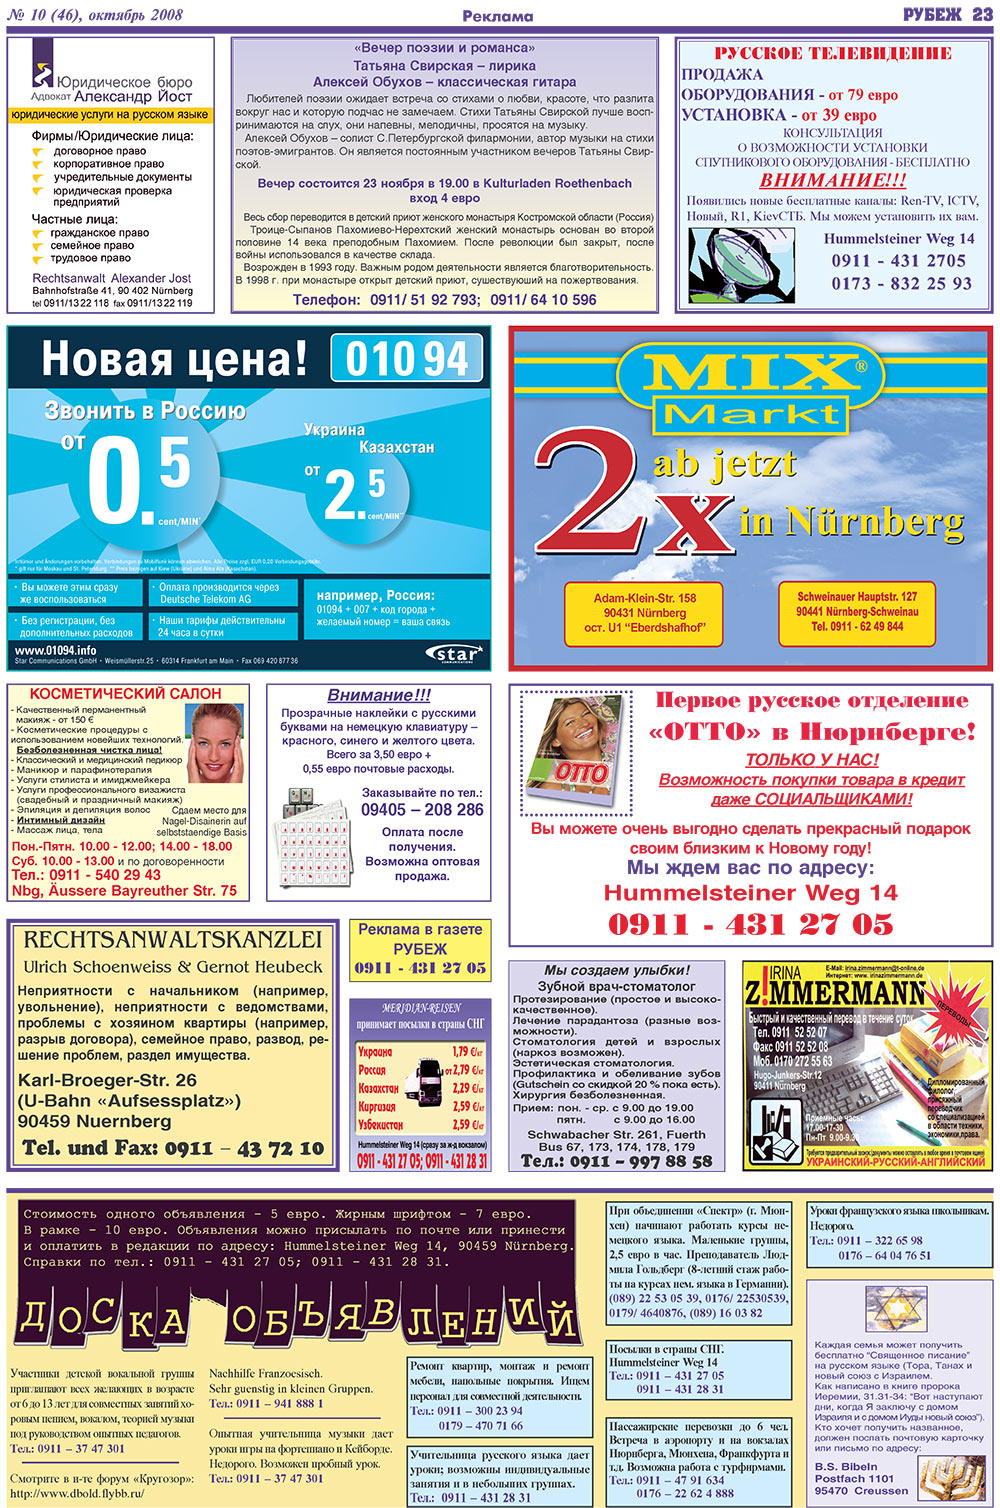 Рубеж (газета). 2008 год, номер 10, стр. 23